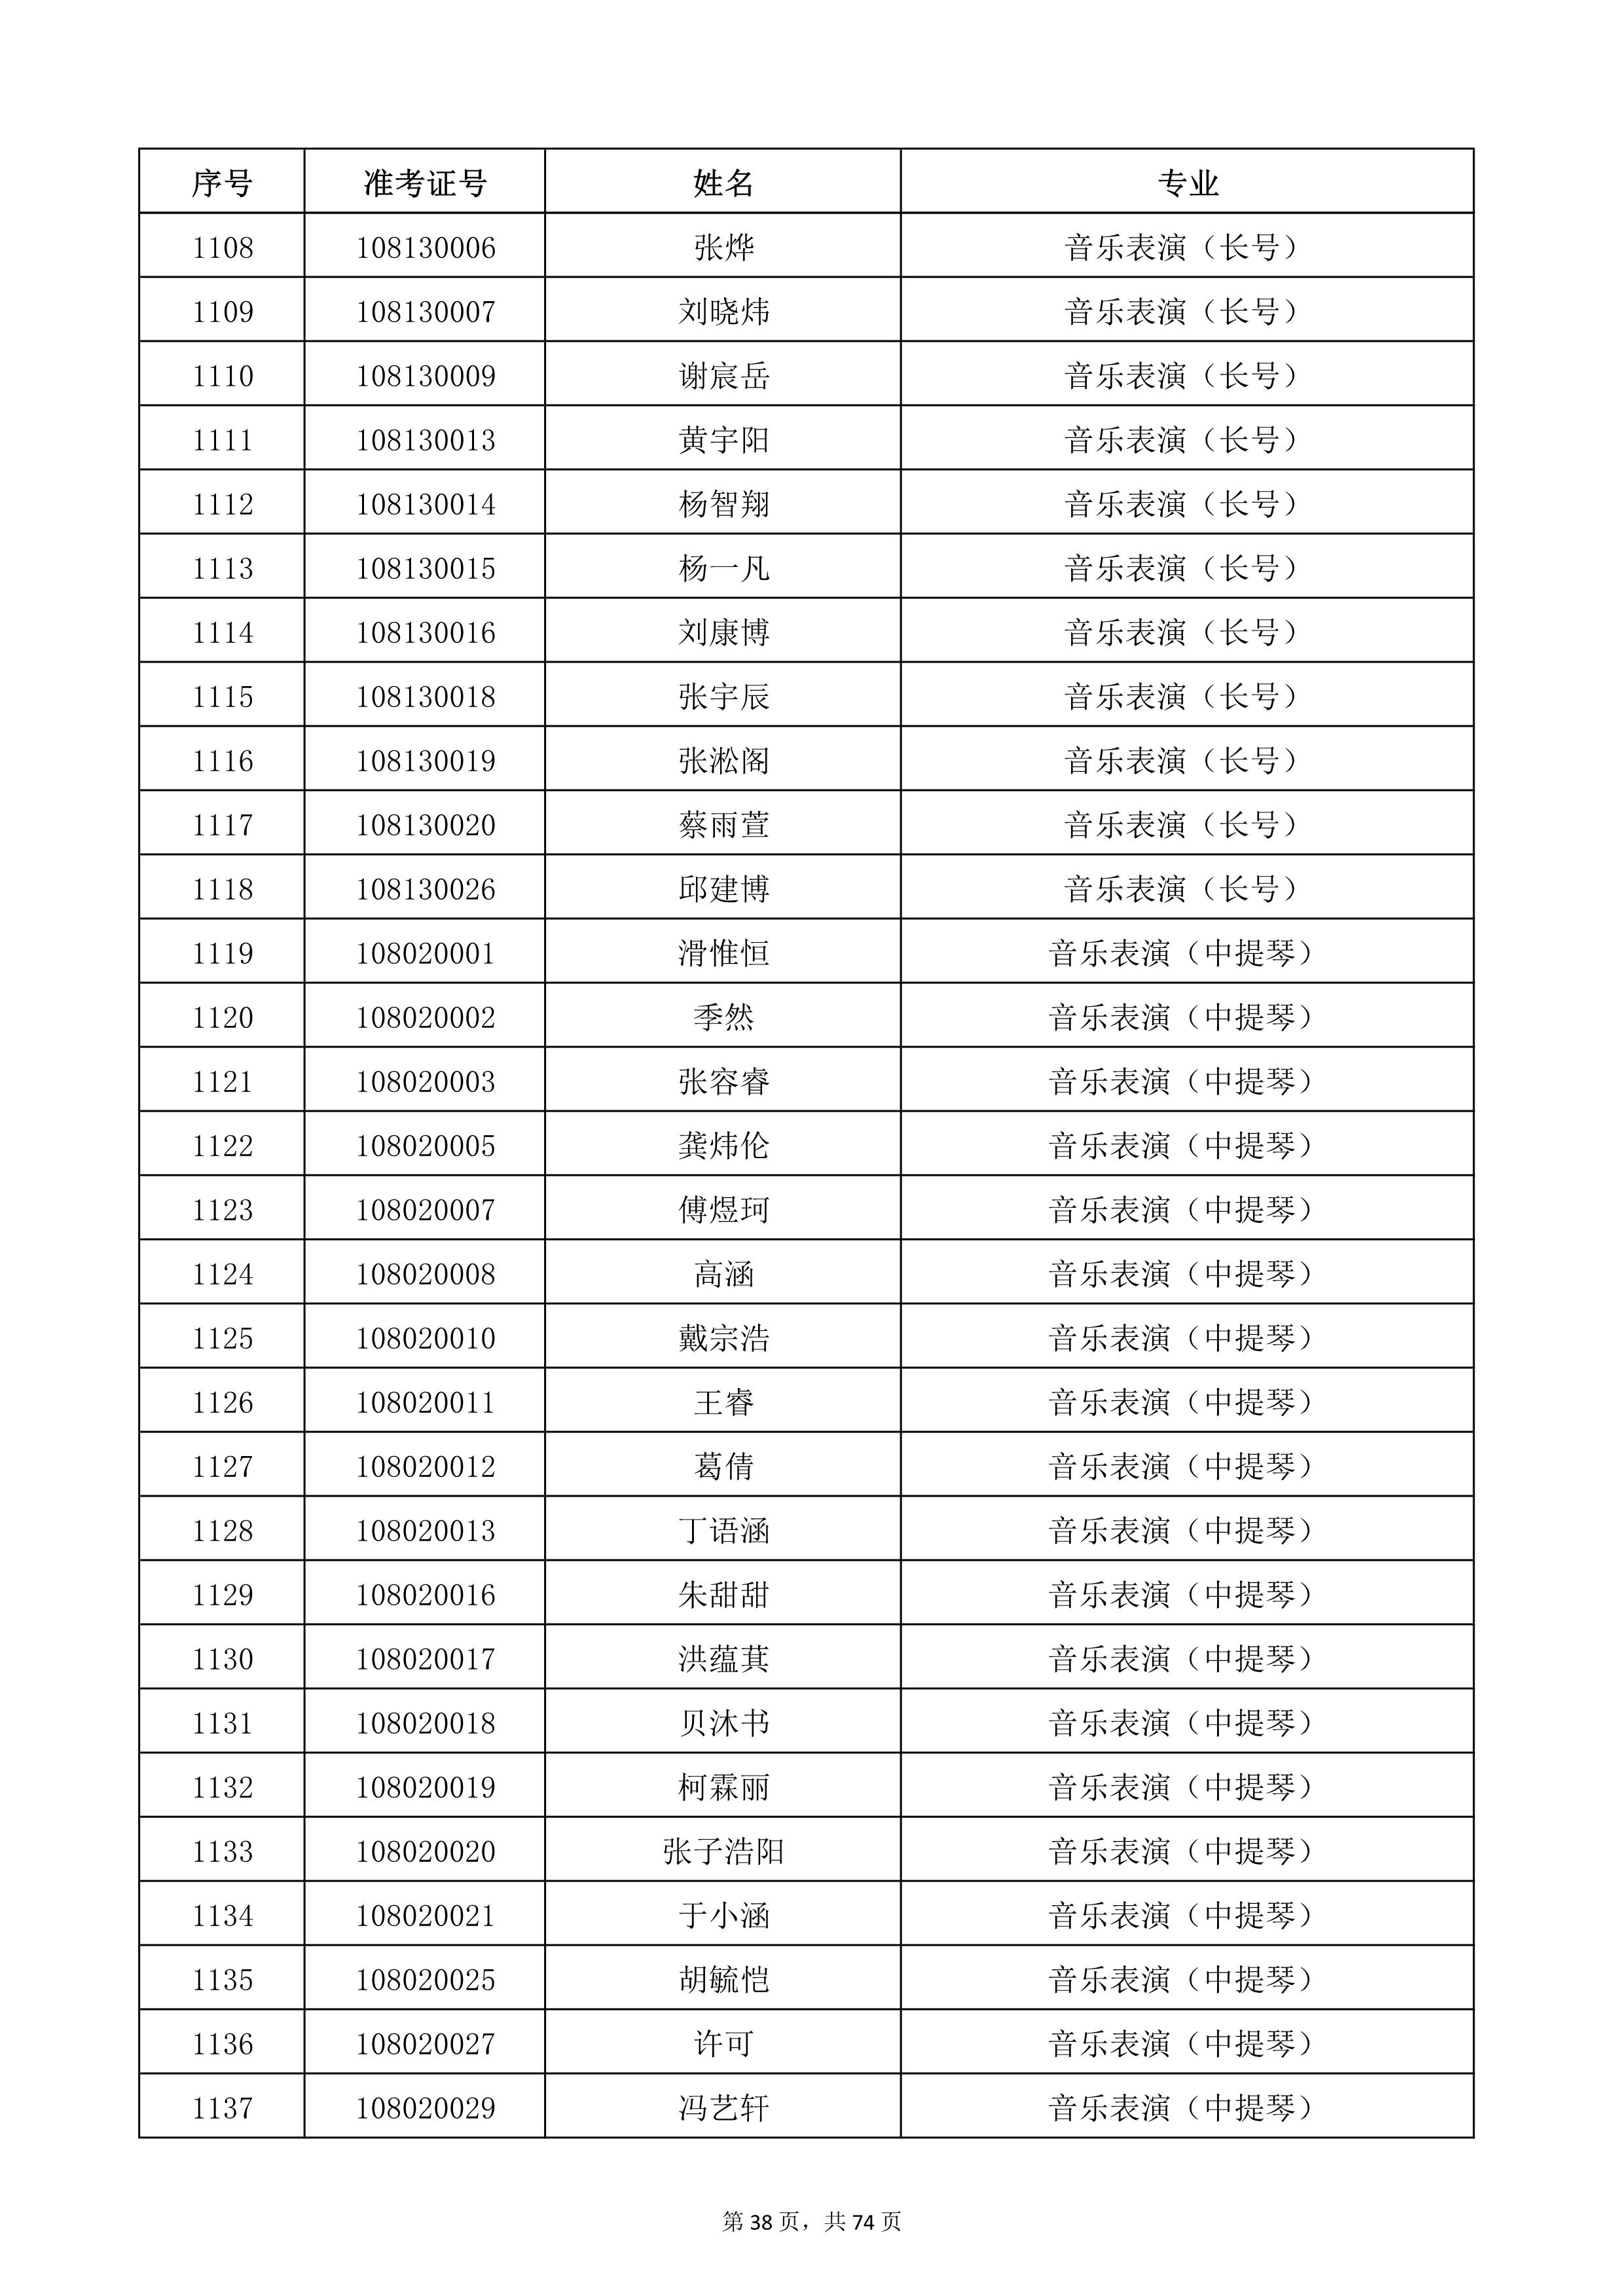 天津音乐学院2022年本科招生考试复试名单_38.jpg